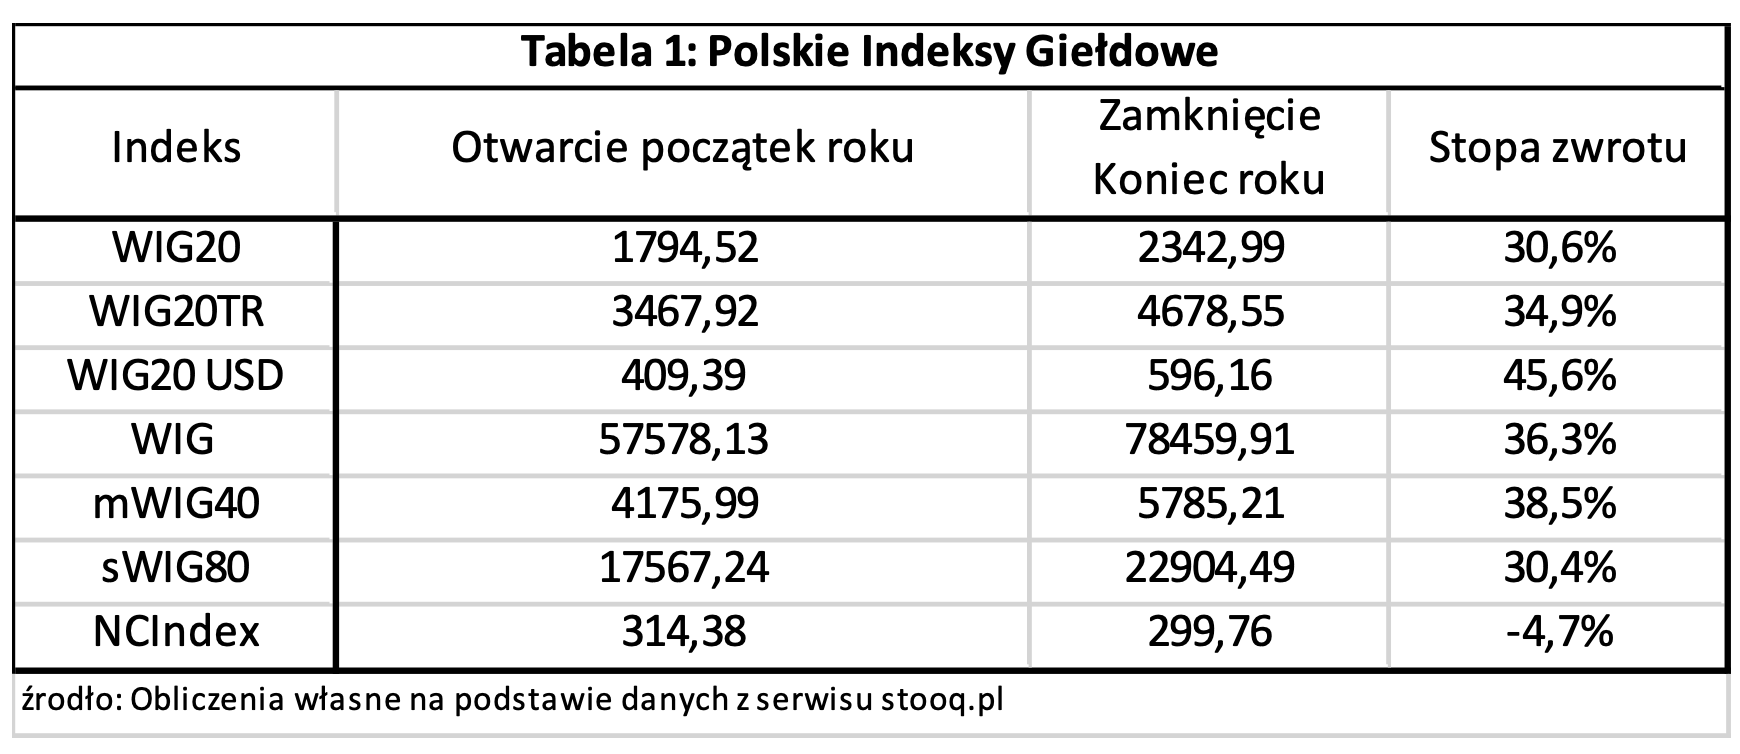 1 Polish stock exchange